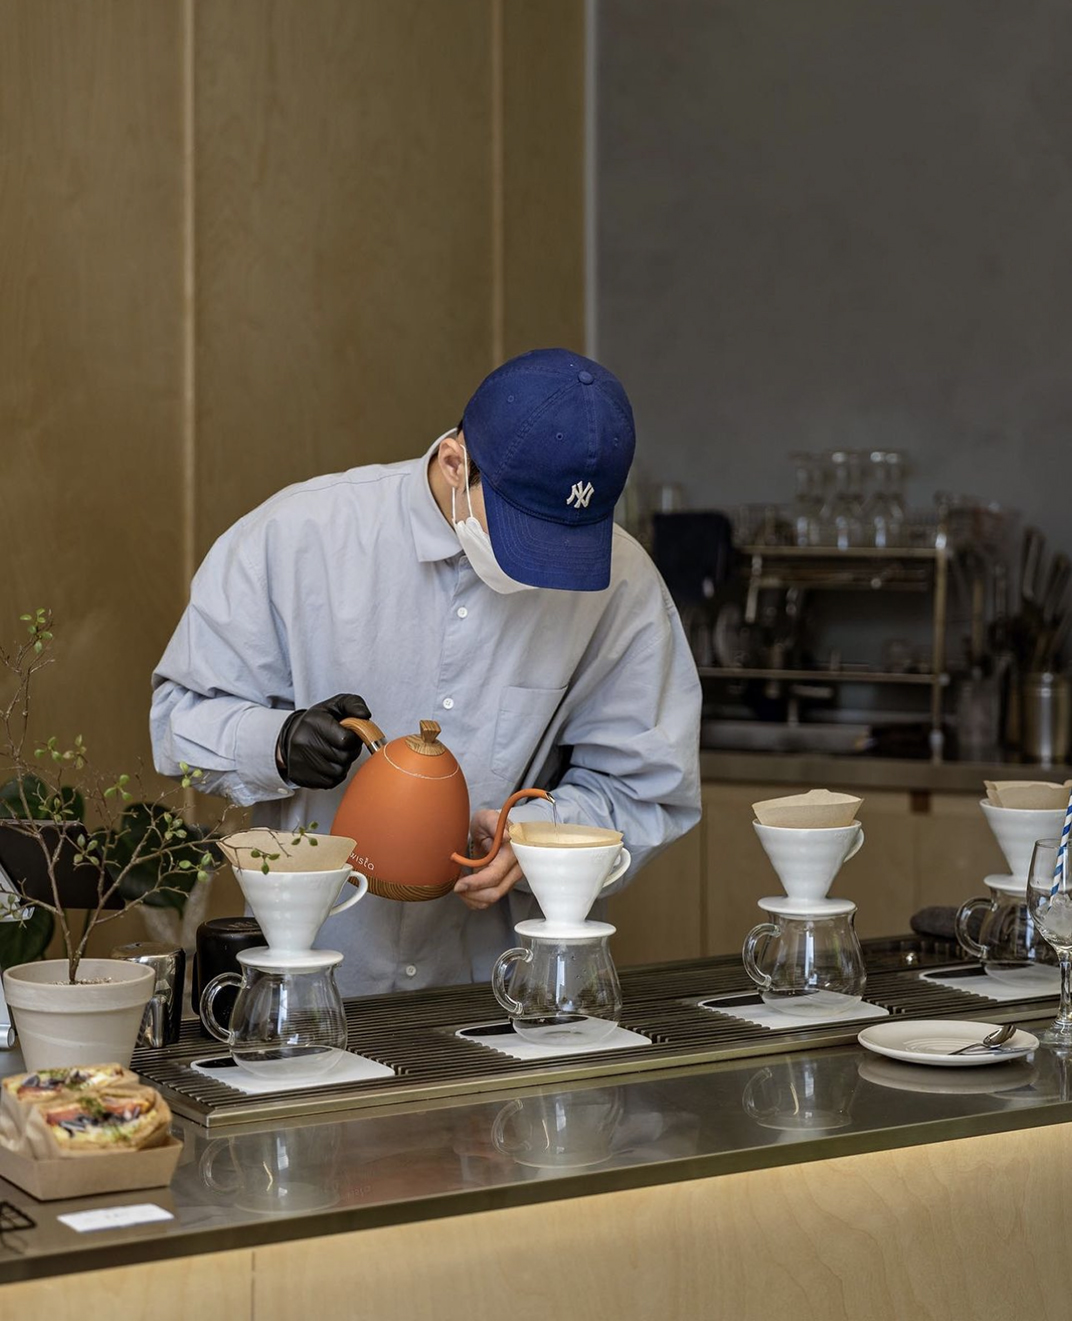 慢行咖啡馆slowalk coffee 韩国 首尔 深圳 北京 上海 广州 武汉 餐饮商业空间 logo设计 vi设计 空间设计